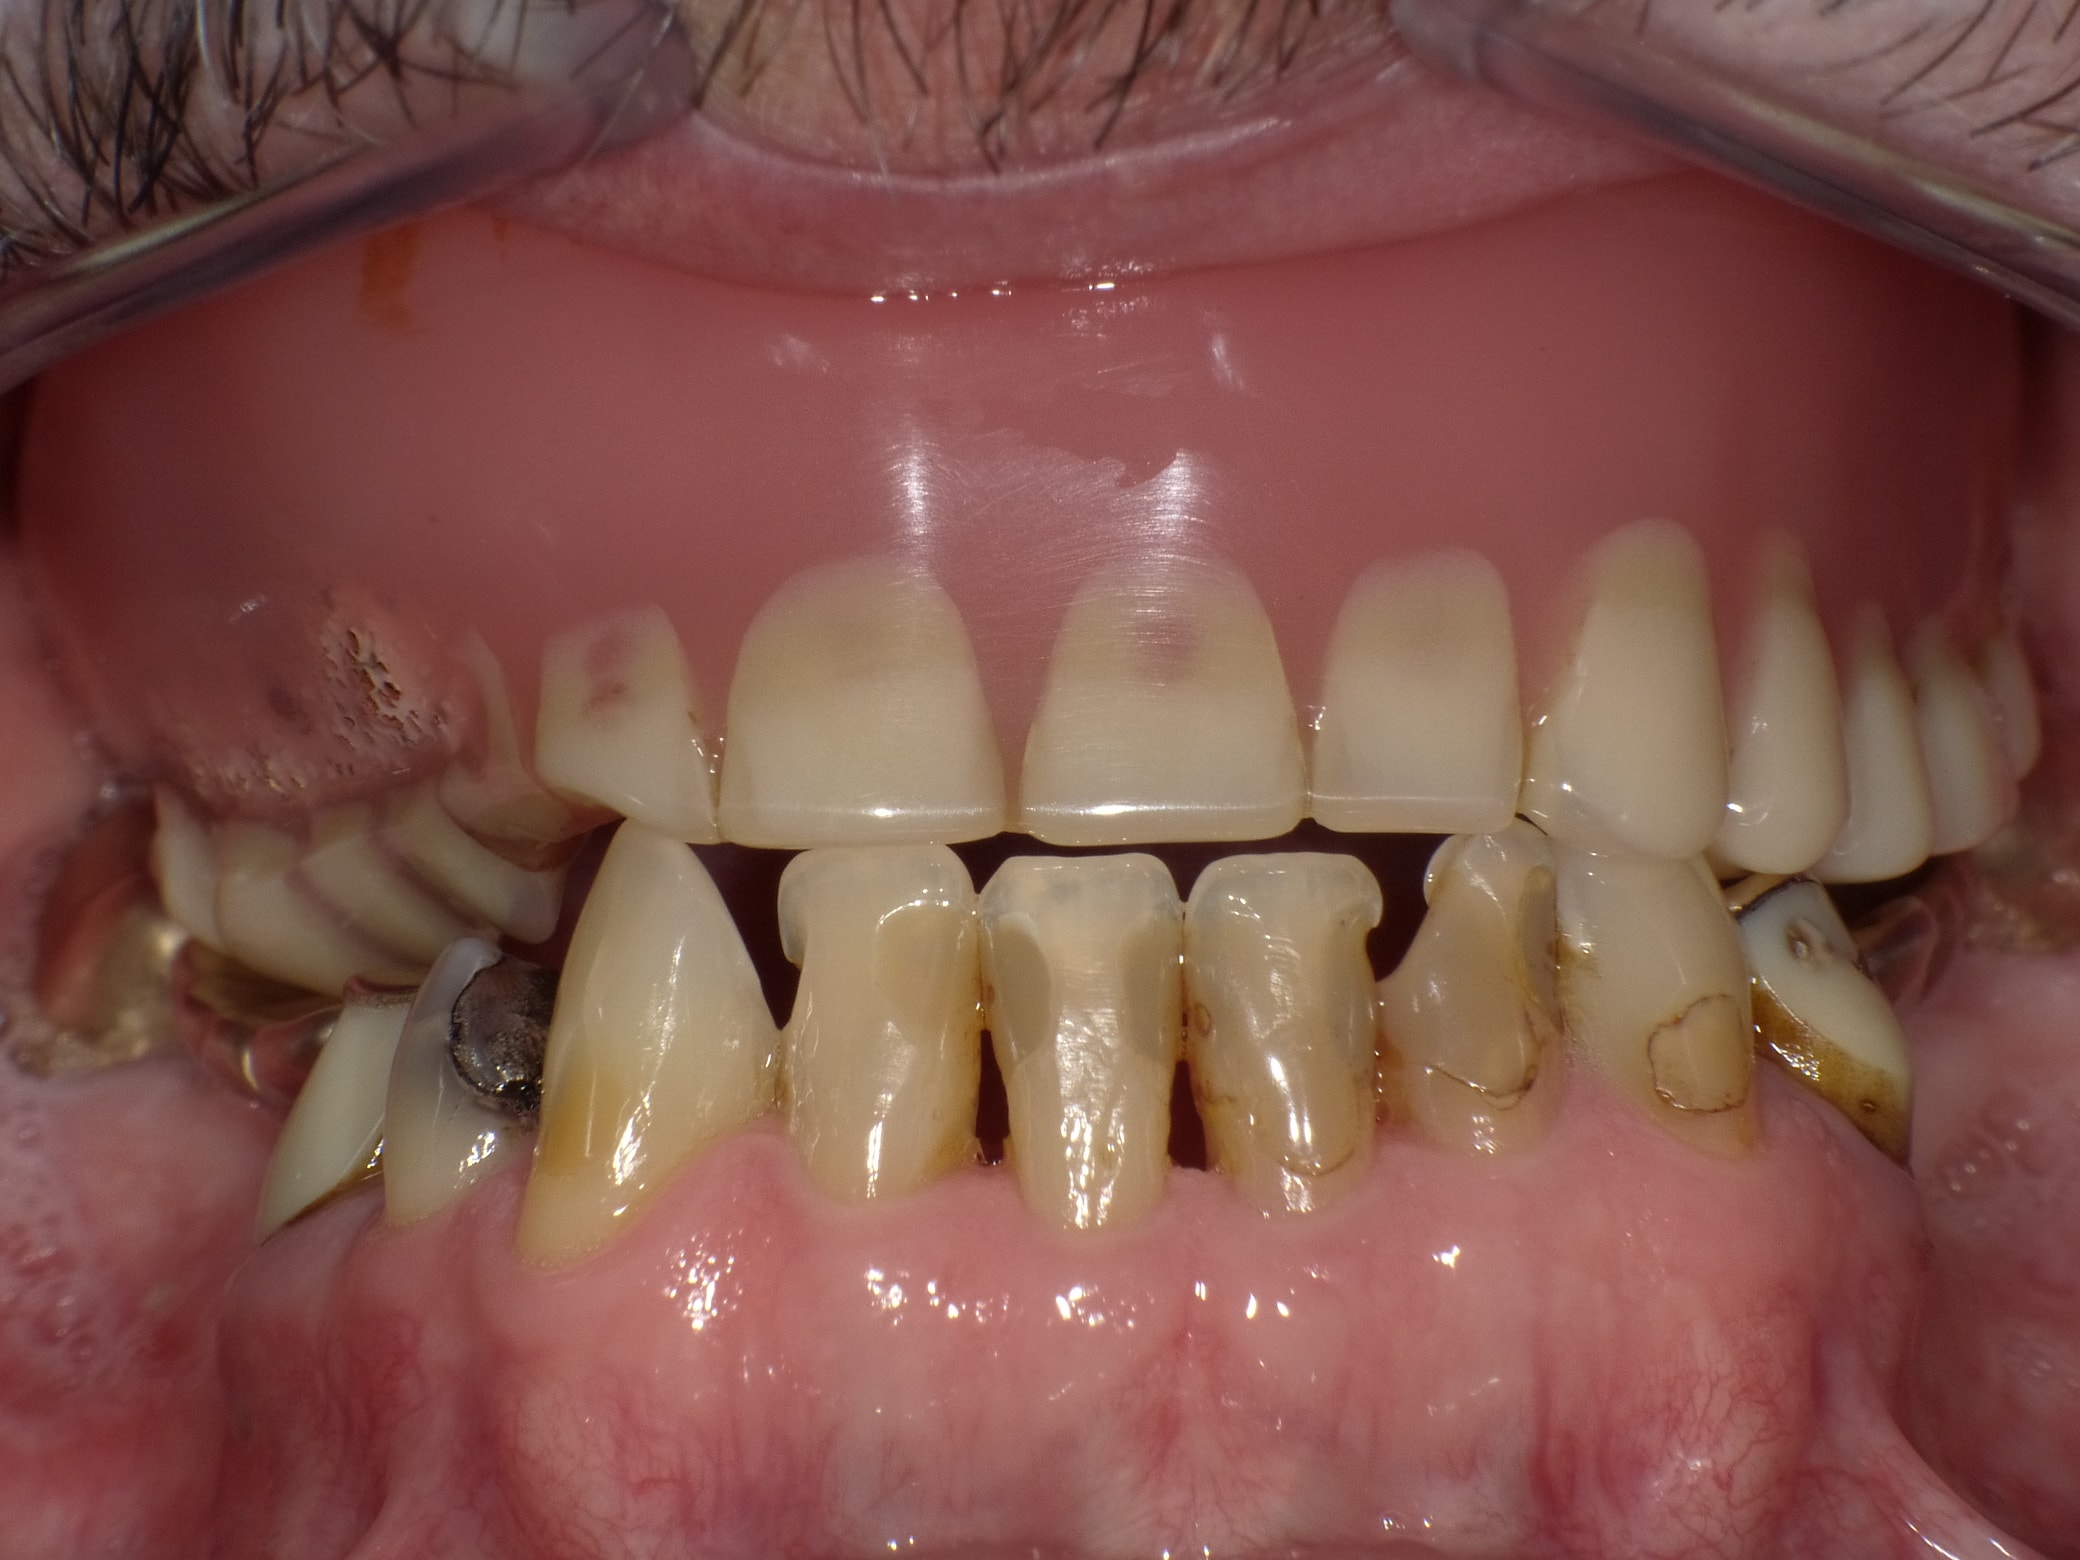 Angstpatient, der sich mittlerweile angewöhnt hatte, seine Zähne möglichst nicht zu zeigen und dadurch unfreundlich wirkte